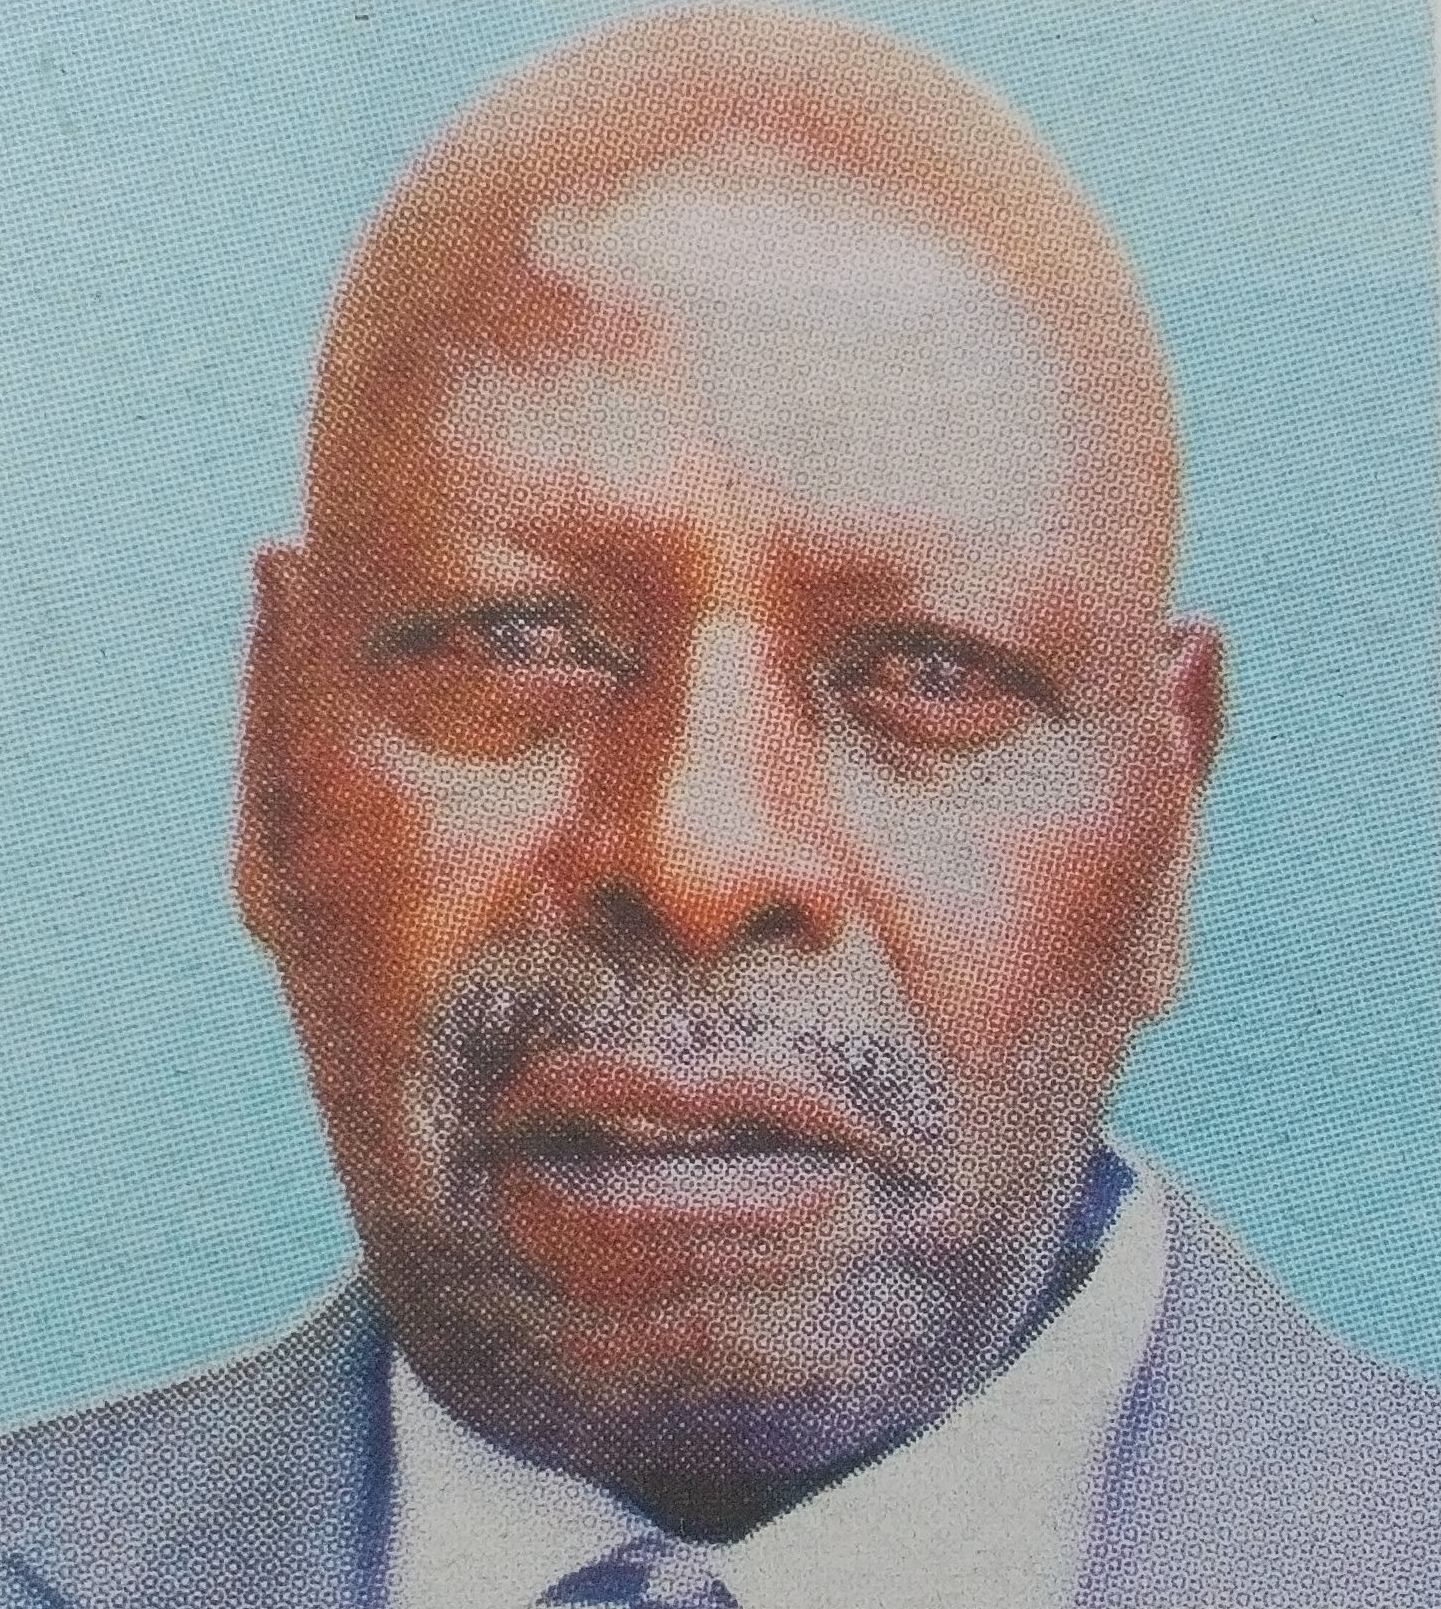 Obituary Image of Eng. Daniel Kiere Kimunyi